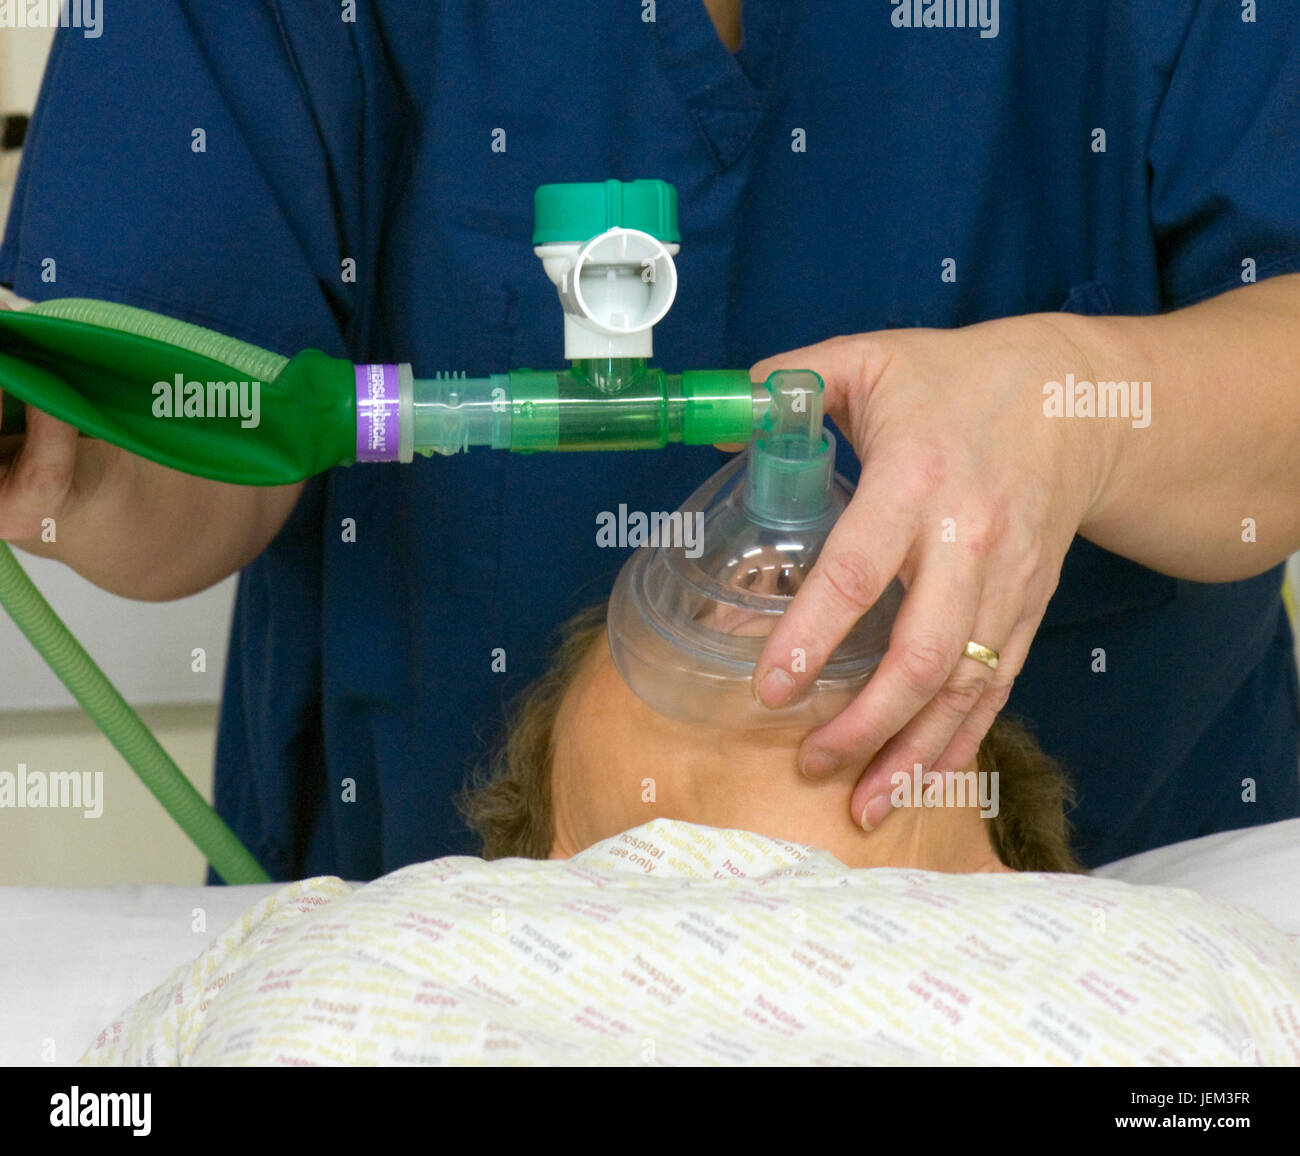 Recupero di ODP praticante sovrintende al paziente di svegliarvi dall'anestesia, utilizzando un sacco di maschera di valvola per fornire la ventilazione a pressione positiva. Foto Stock